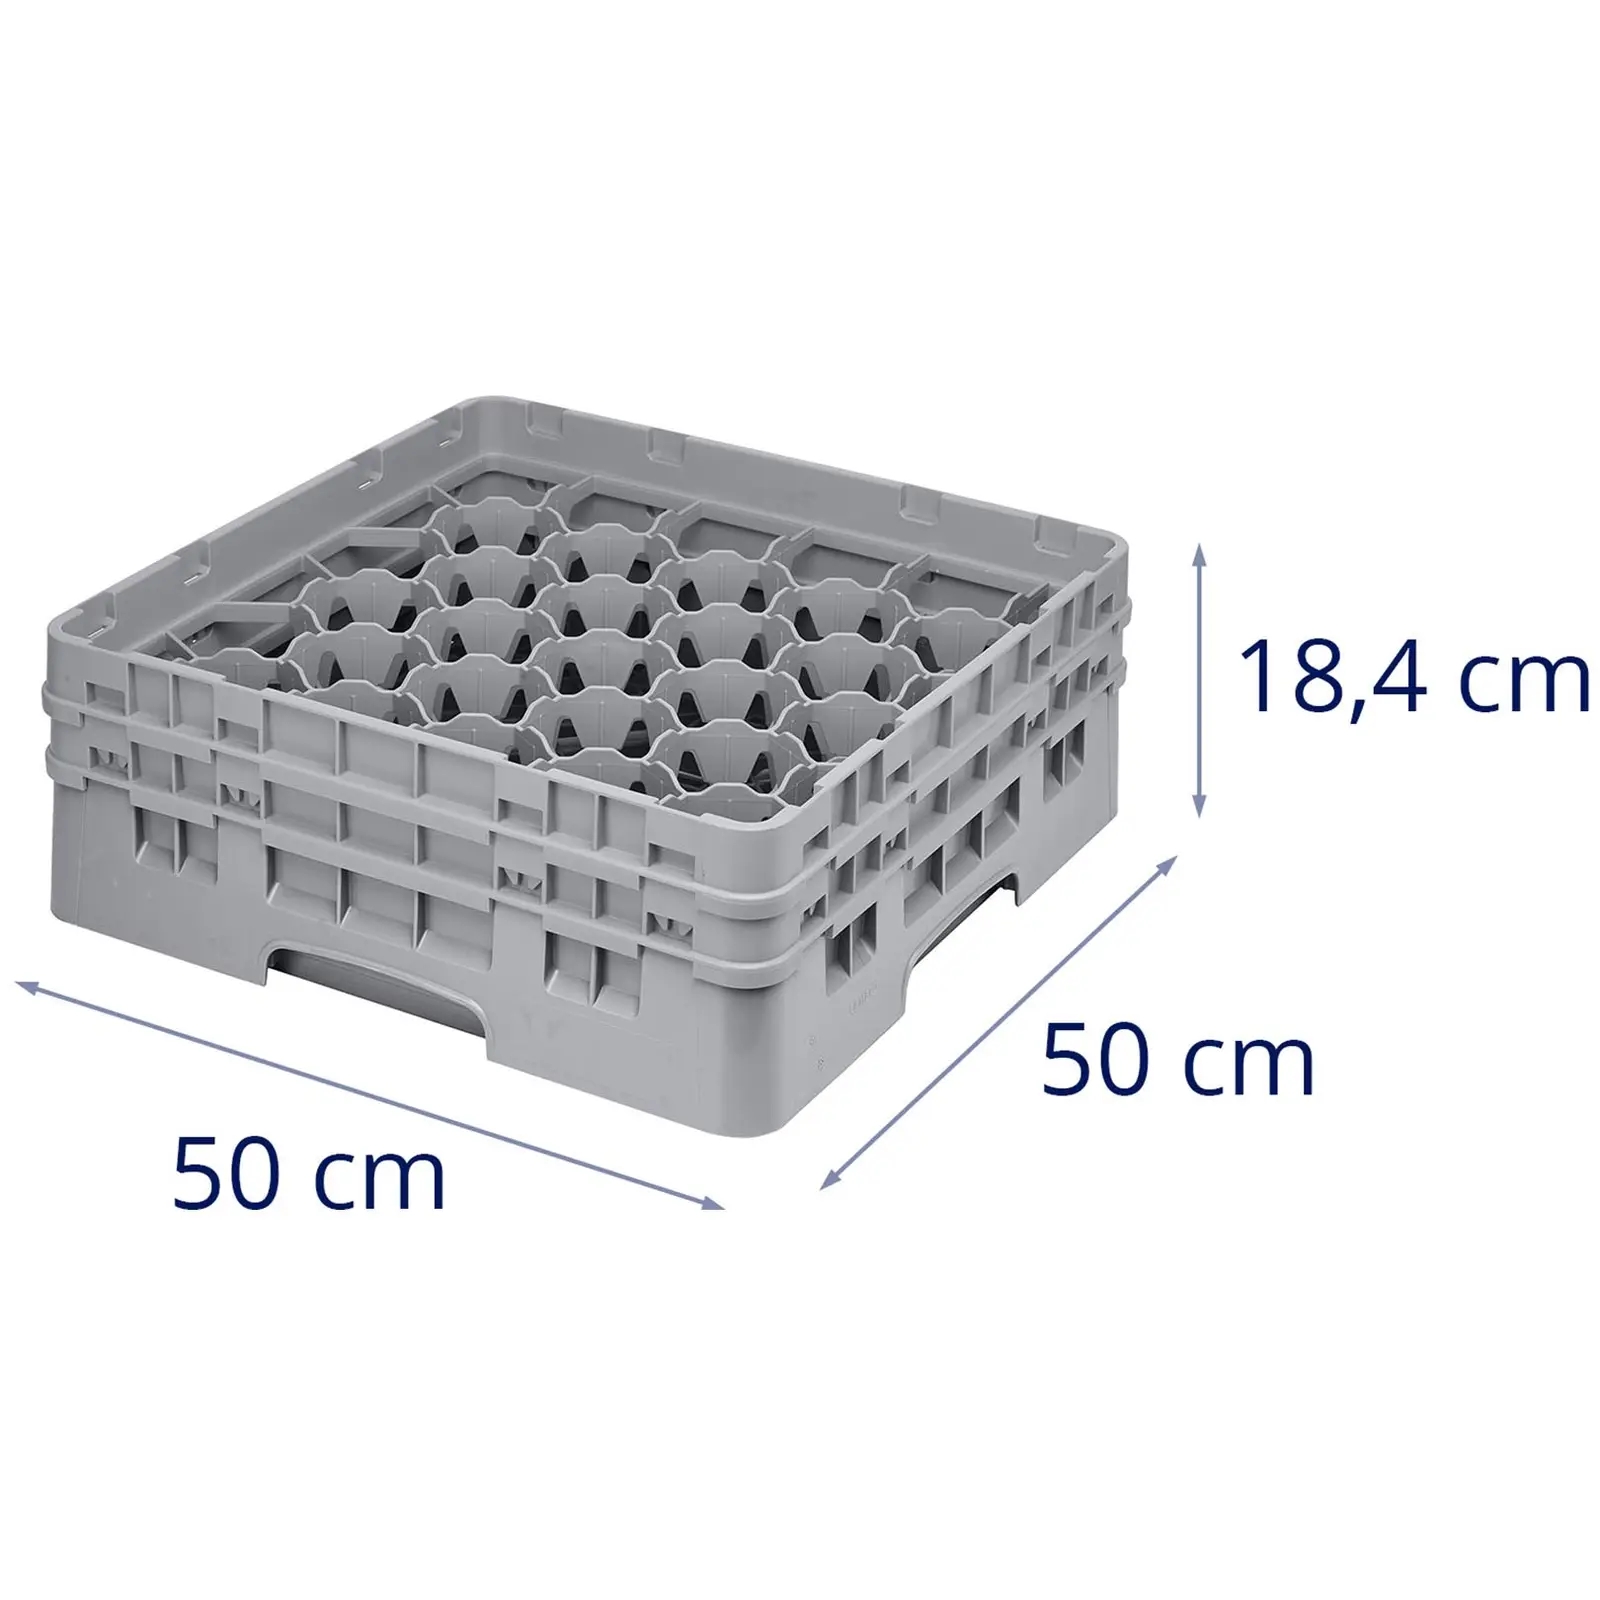 Opvaskekurv til glas til industriopvaskemaskine - 30 rum - 50 x 50 x 18,4 cm - glashøjde: 13,3 cm